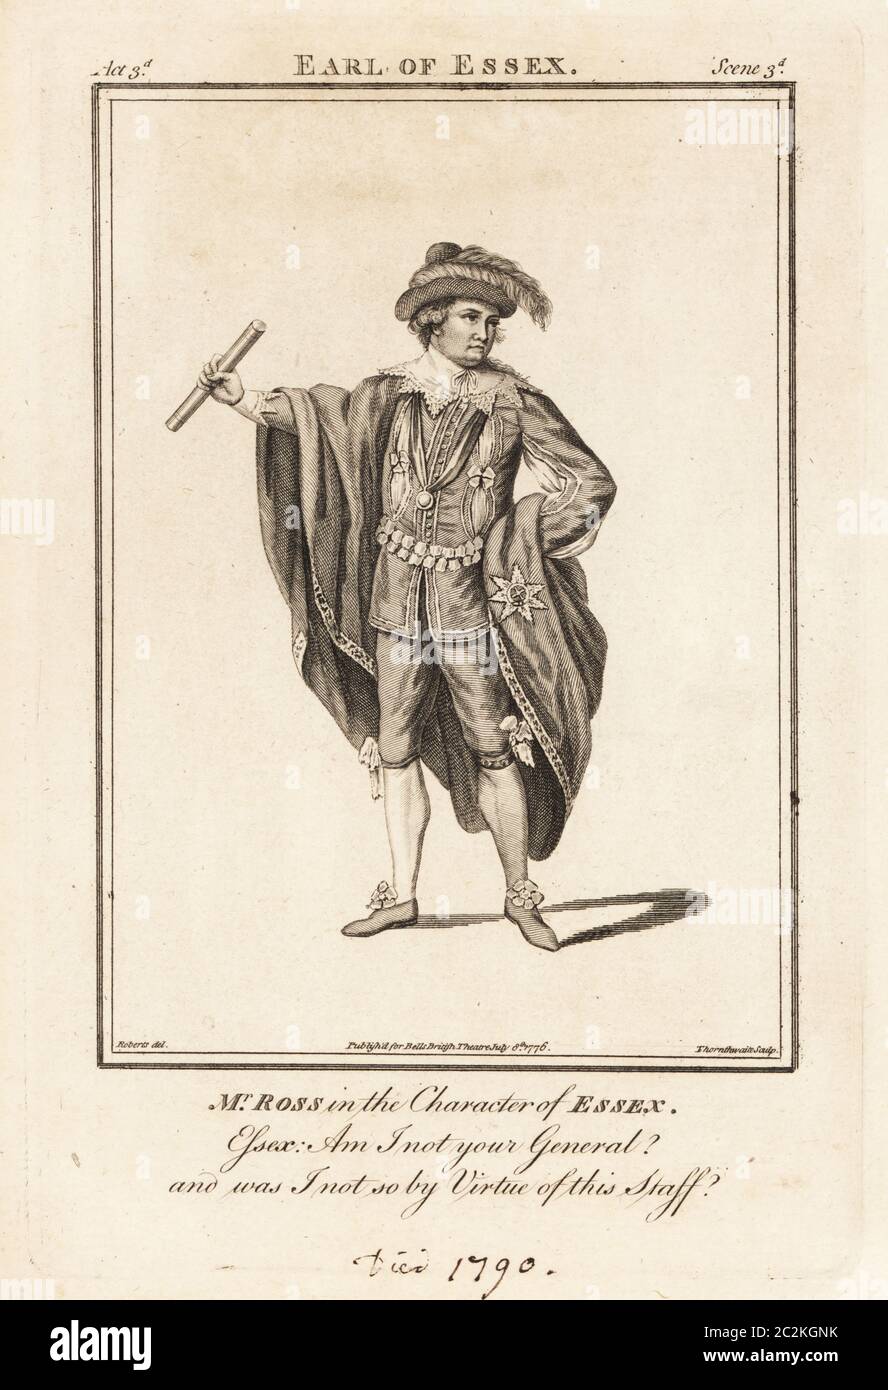 David Ross in der Figur von Essex in Henry Jones' The Earl of Essex, Drury Lane Theatre, 1752. Kupferstich von J. Thornthwaite nach einer Illustration von James Roberts vom British Theatre von Bell, bestehend aus den angesehensten englischen Stücken, John Bell, London, 1776. Stockfoto